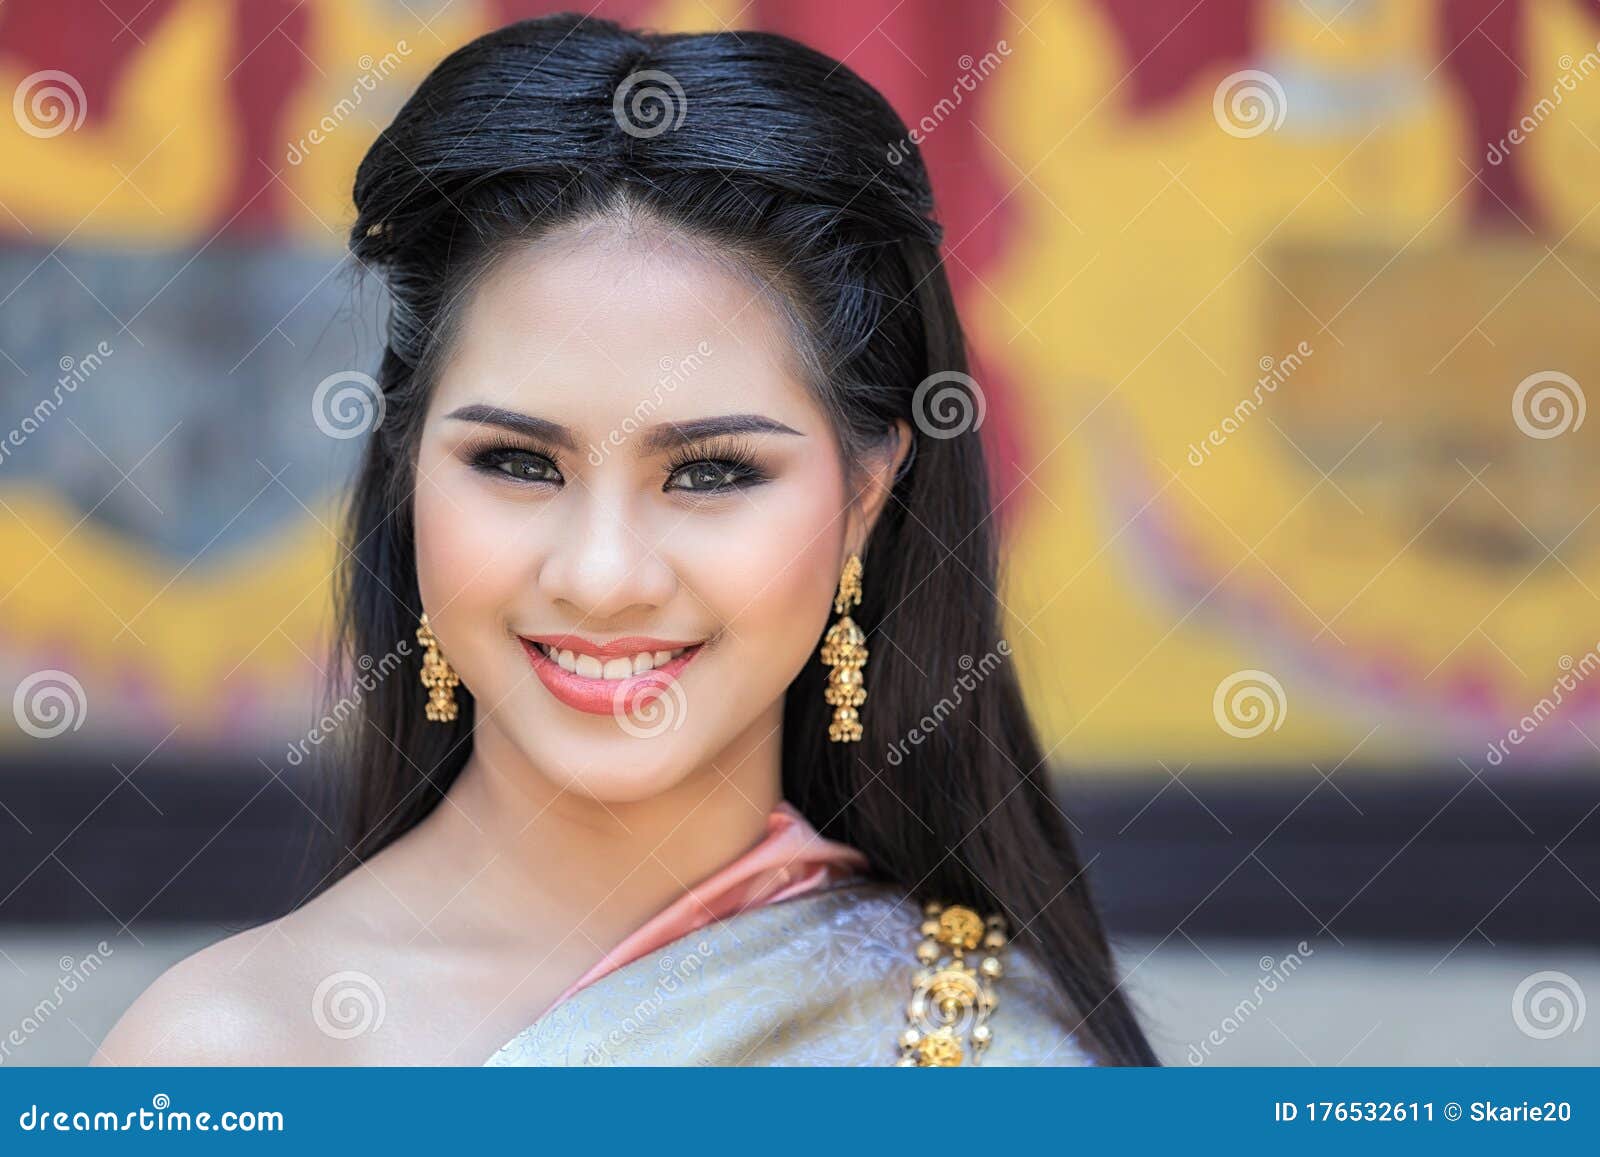 泰国 女人 女孩 - Pixabay上的免费照片 - Pixabay